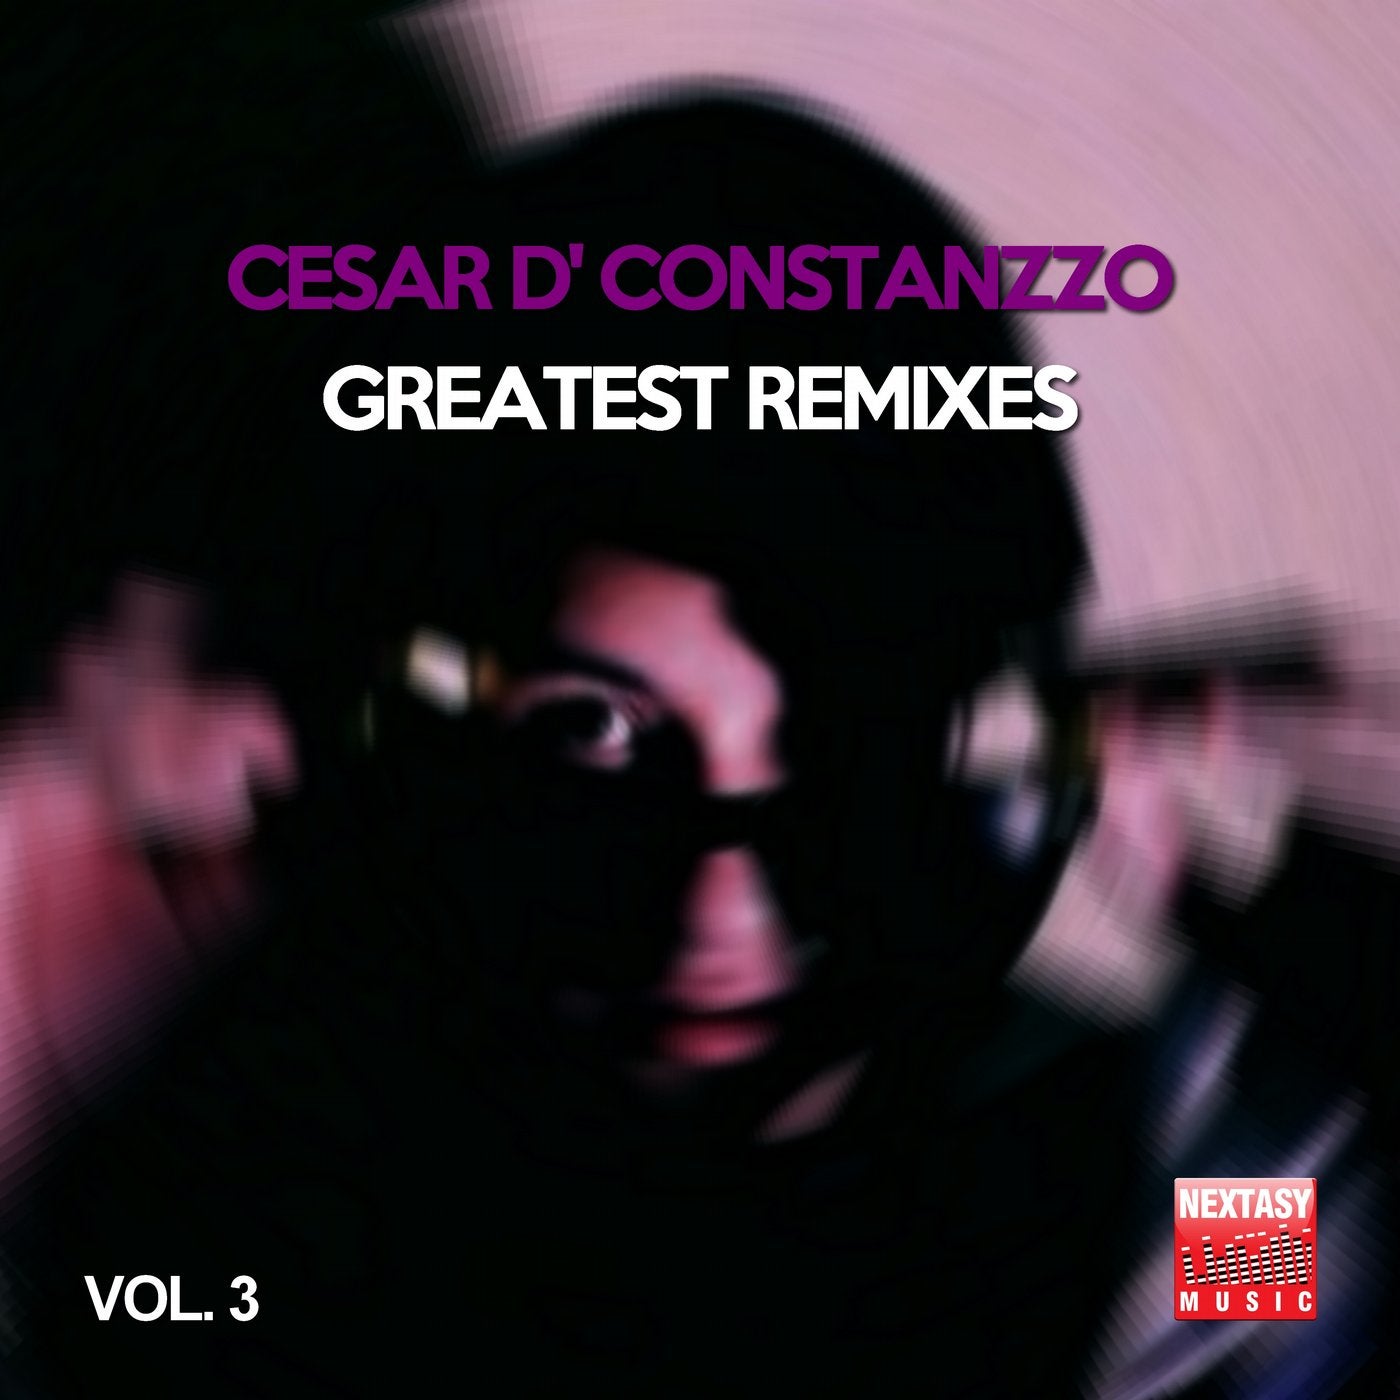 Cesar D' Constanzzo Greatest Remixes, Vol. 3